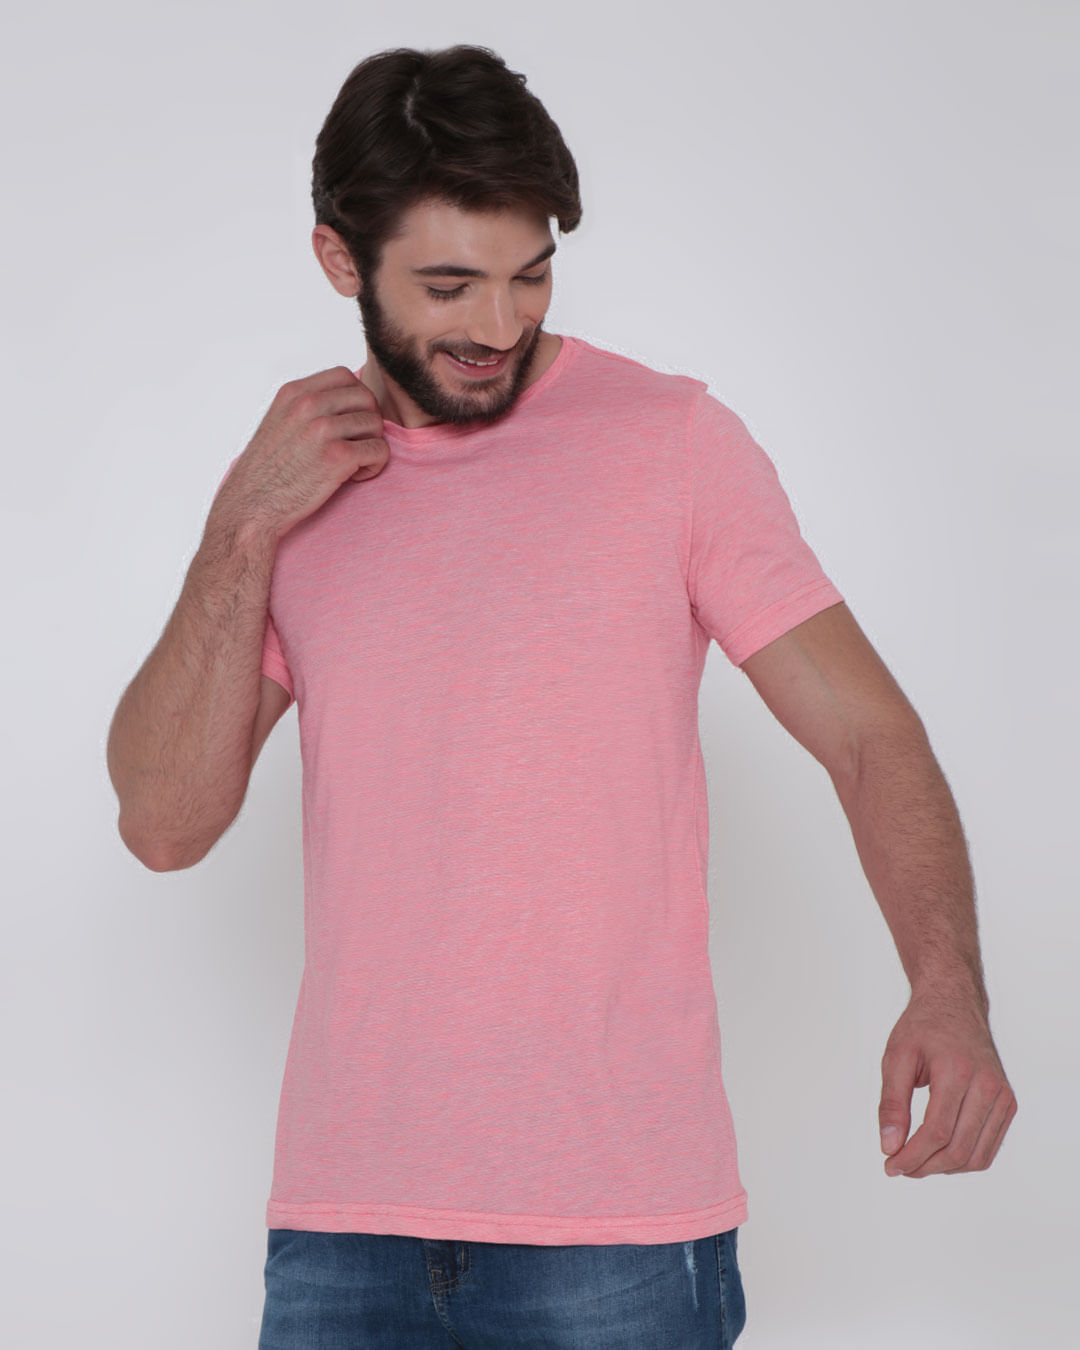 Camiseta Masculina Básica Mesclada Neon Rosa Claro